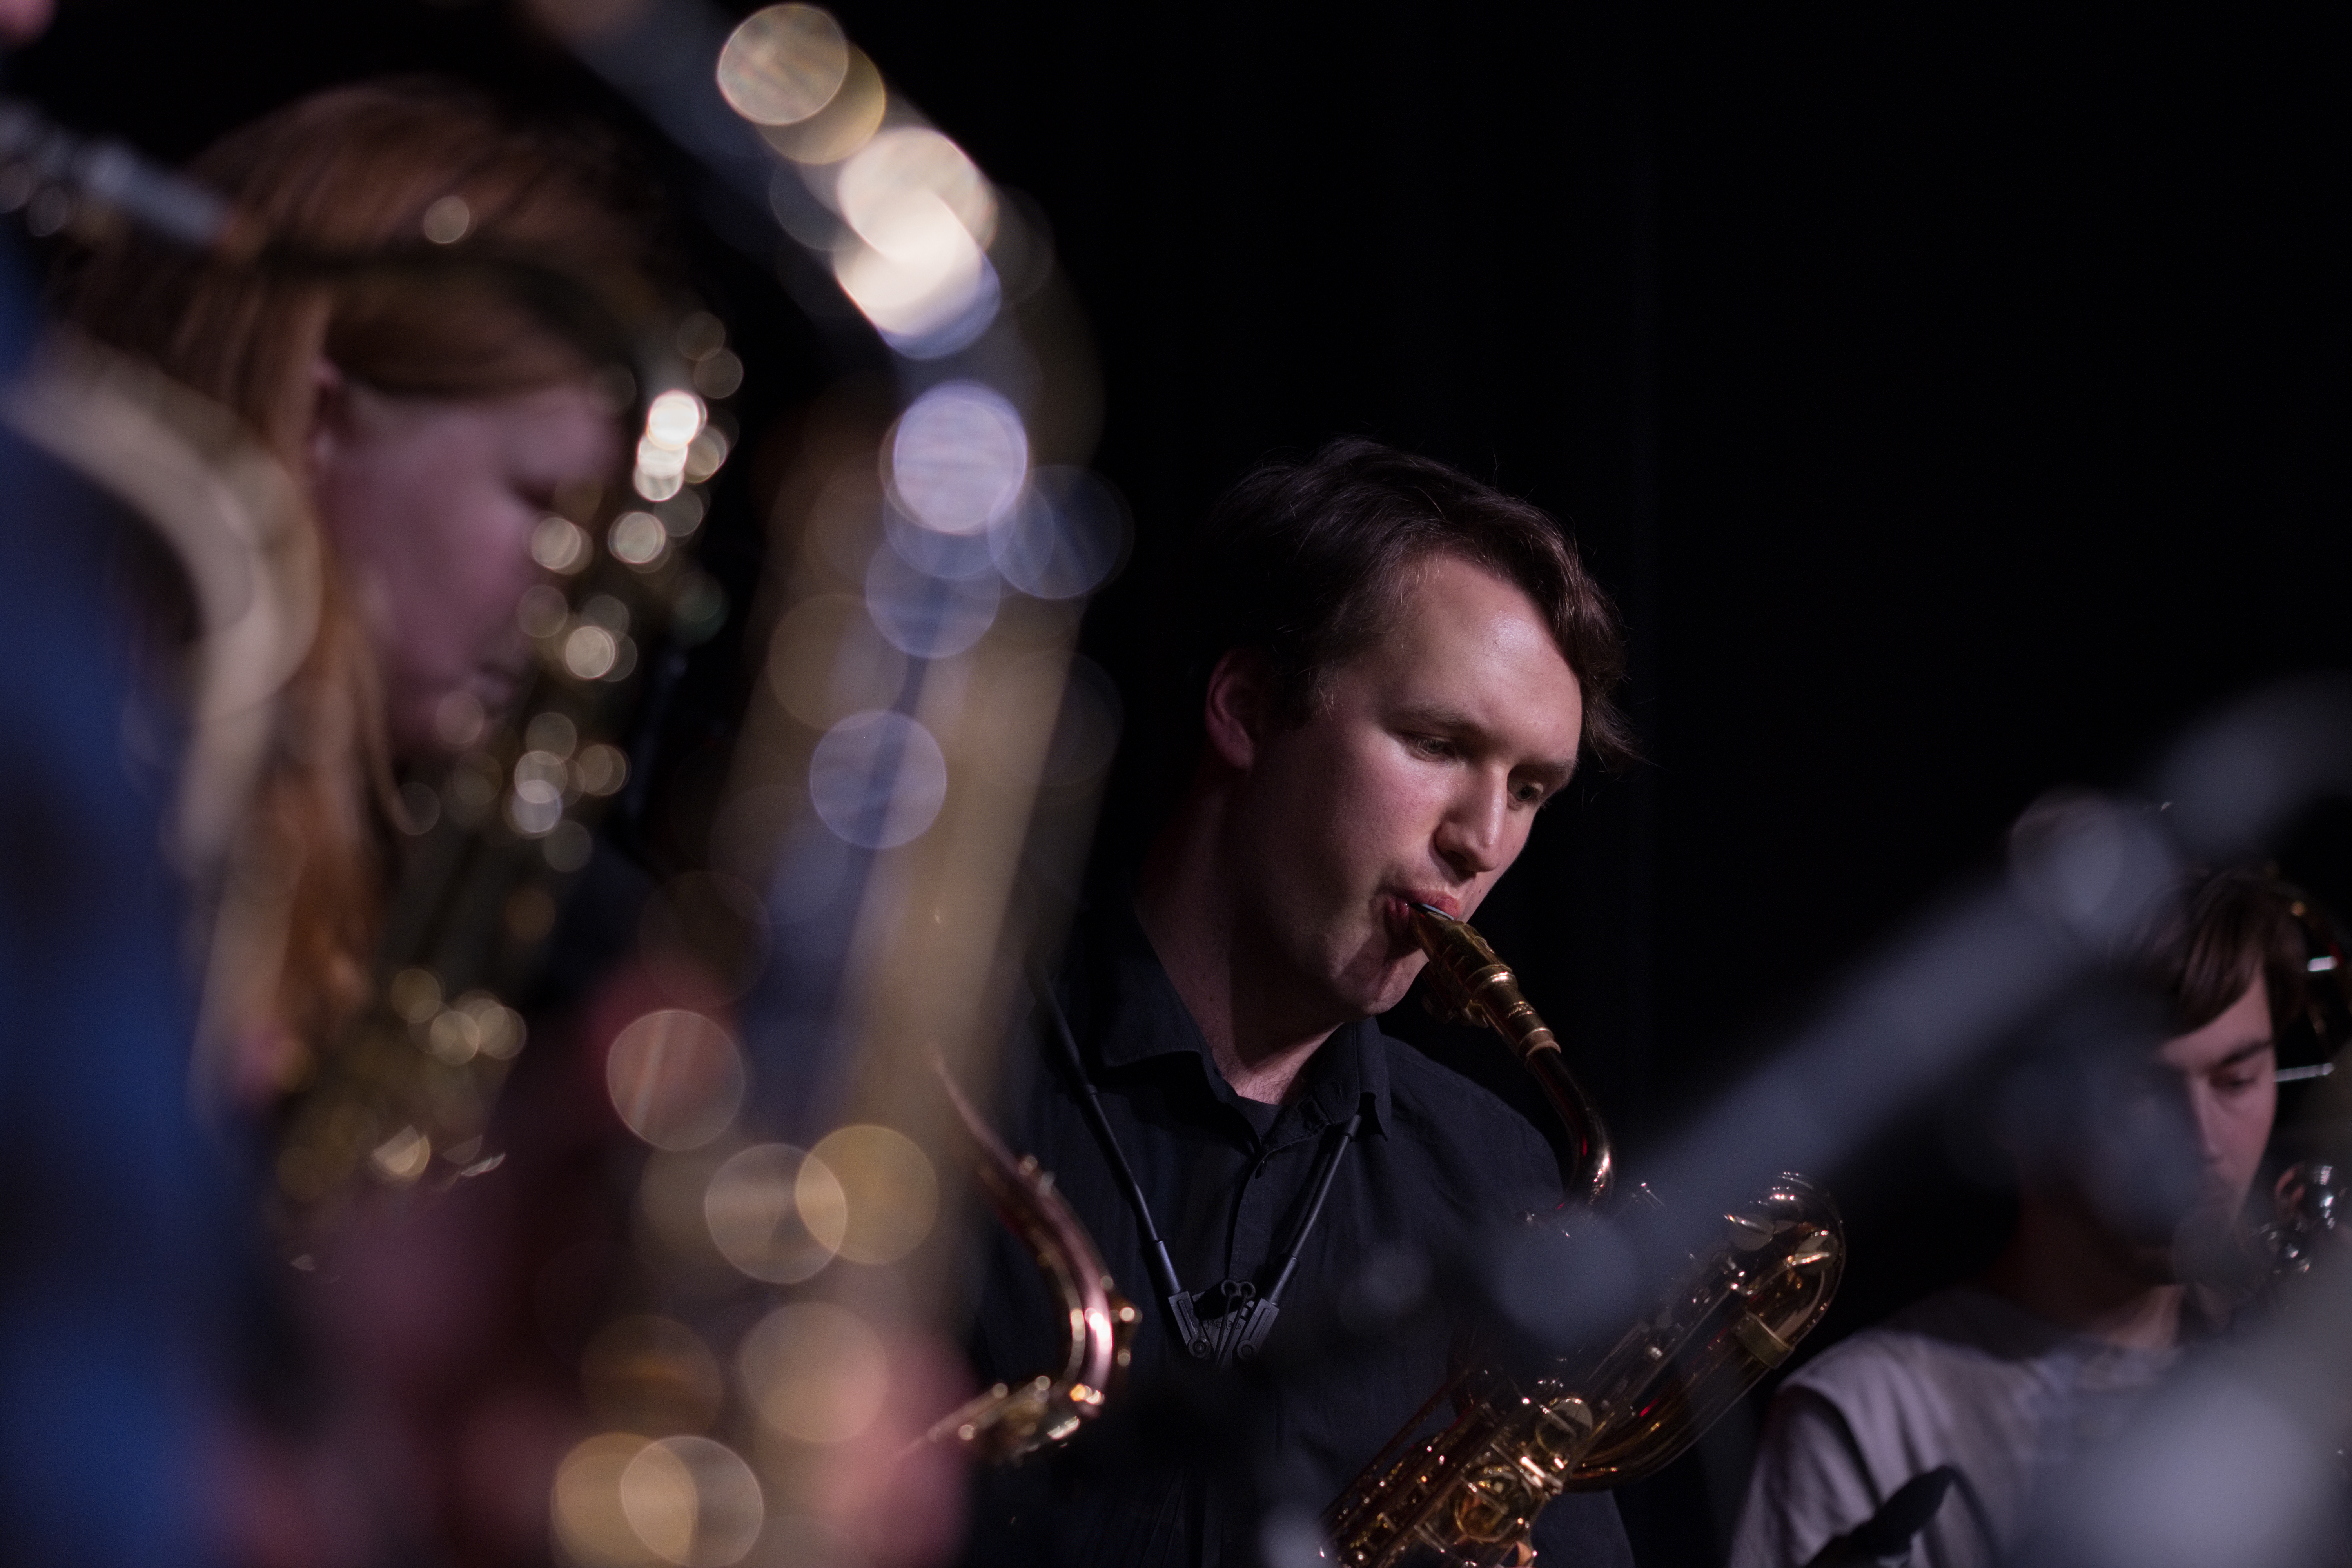 Julekonsert med Bjergsted jazzensemble desember 2018. Foto: Kornelius Kiil Enoksen